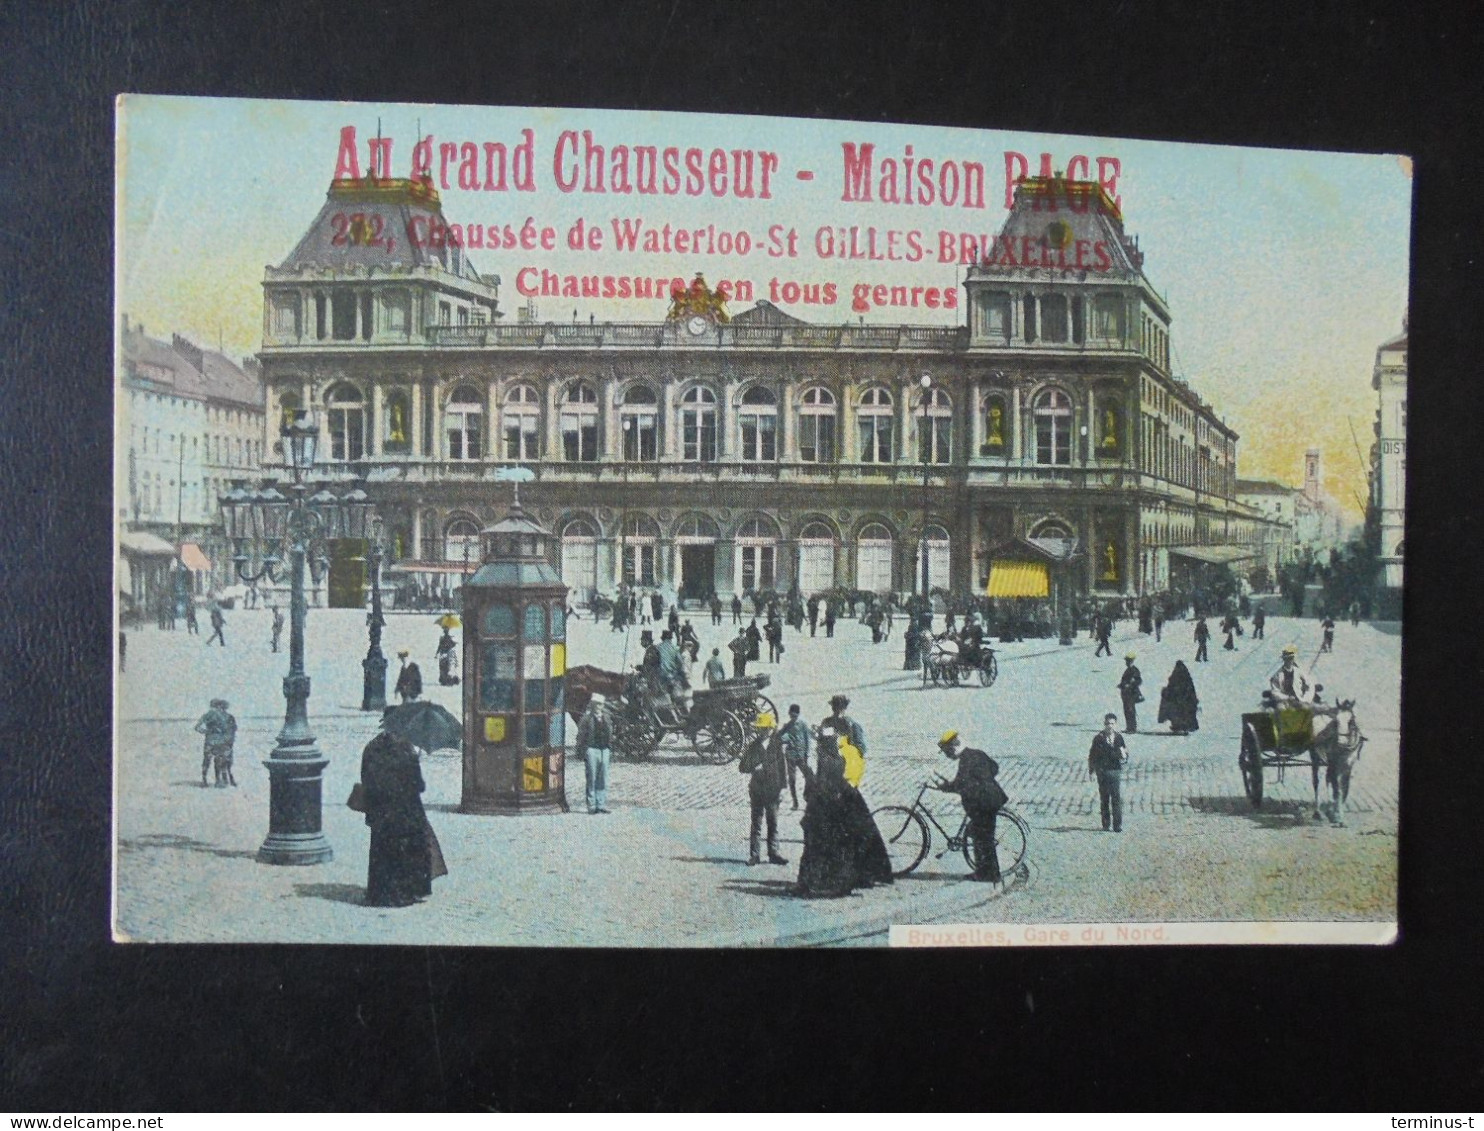 Bruxelles. Gare Du Nord. AU GRAND CHAUSSEUR. Maison Page - Schienenverkehr - Bahnhöfe